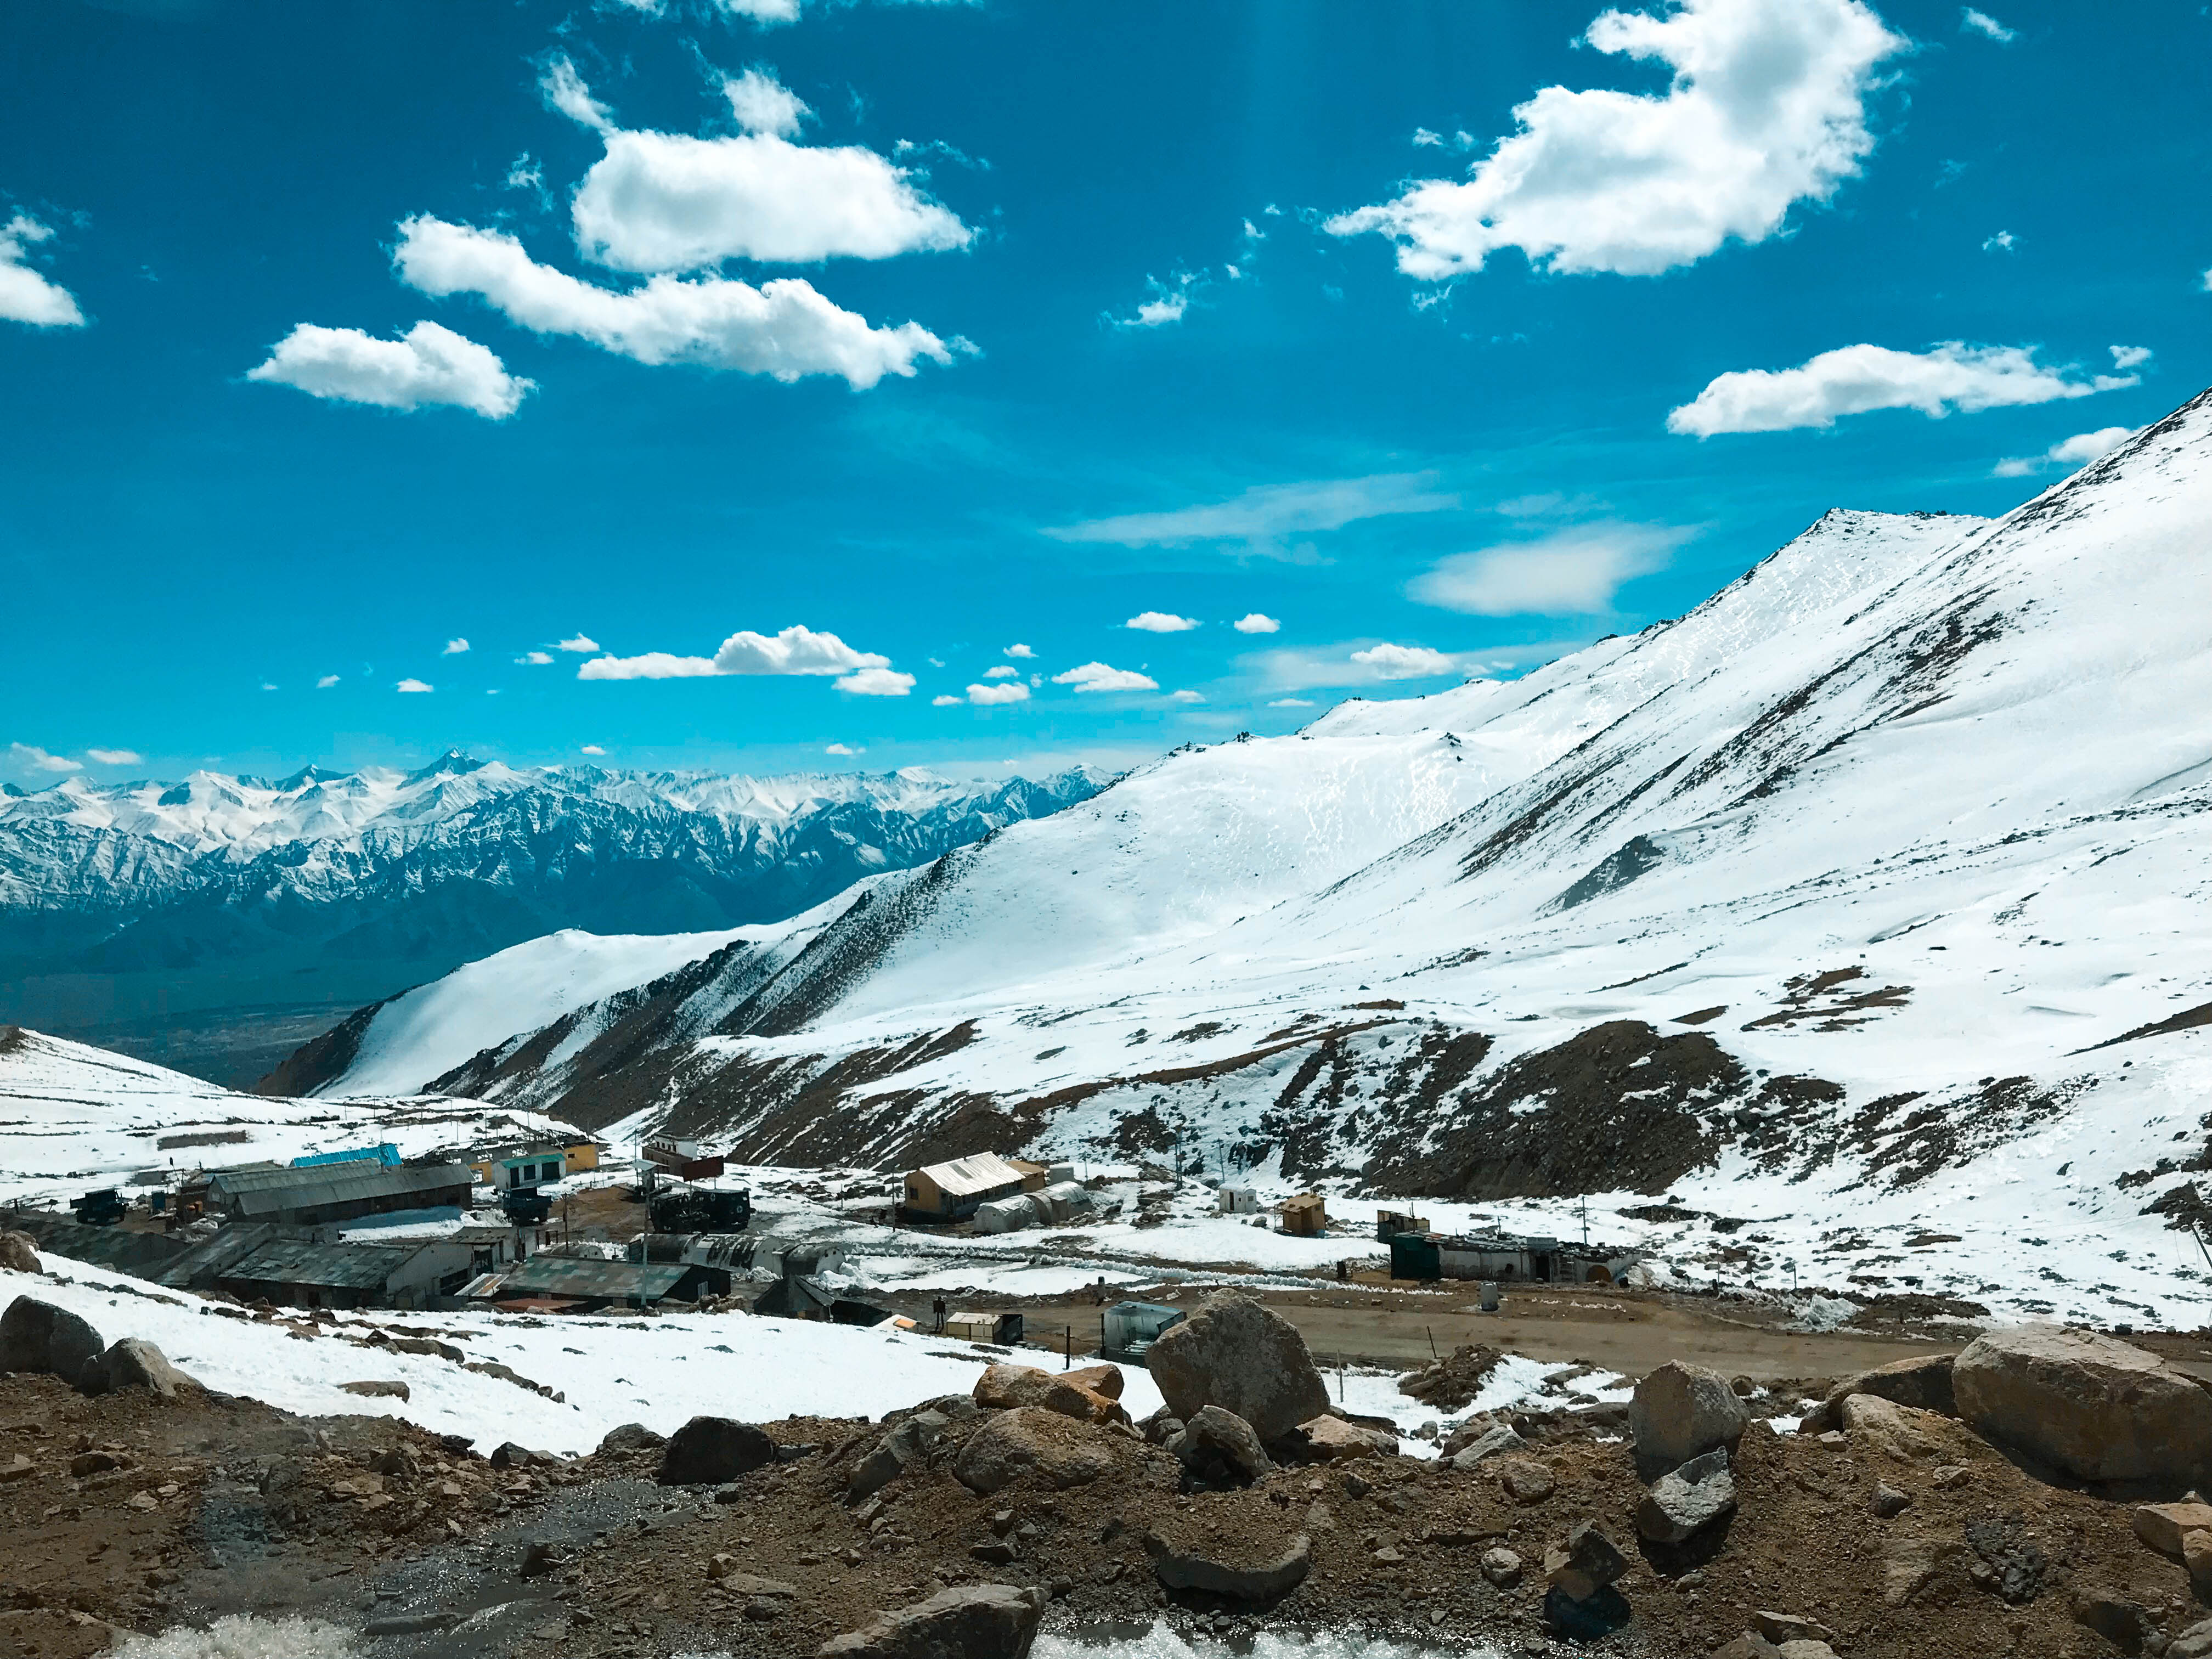 Khardongla Pass ทัวร์เลห์ ลาดักห์ เที่ยวเลห์ ลาดักห์ Leh Ladakh Tour leh ladakh